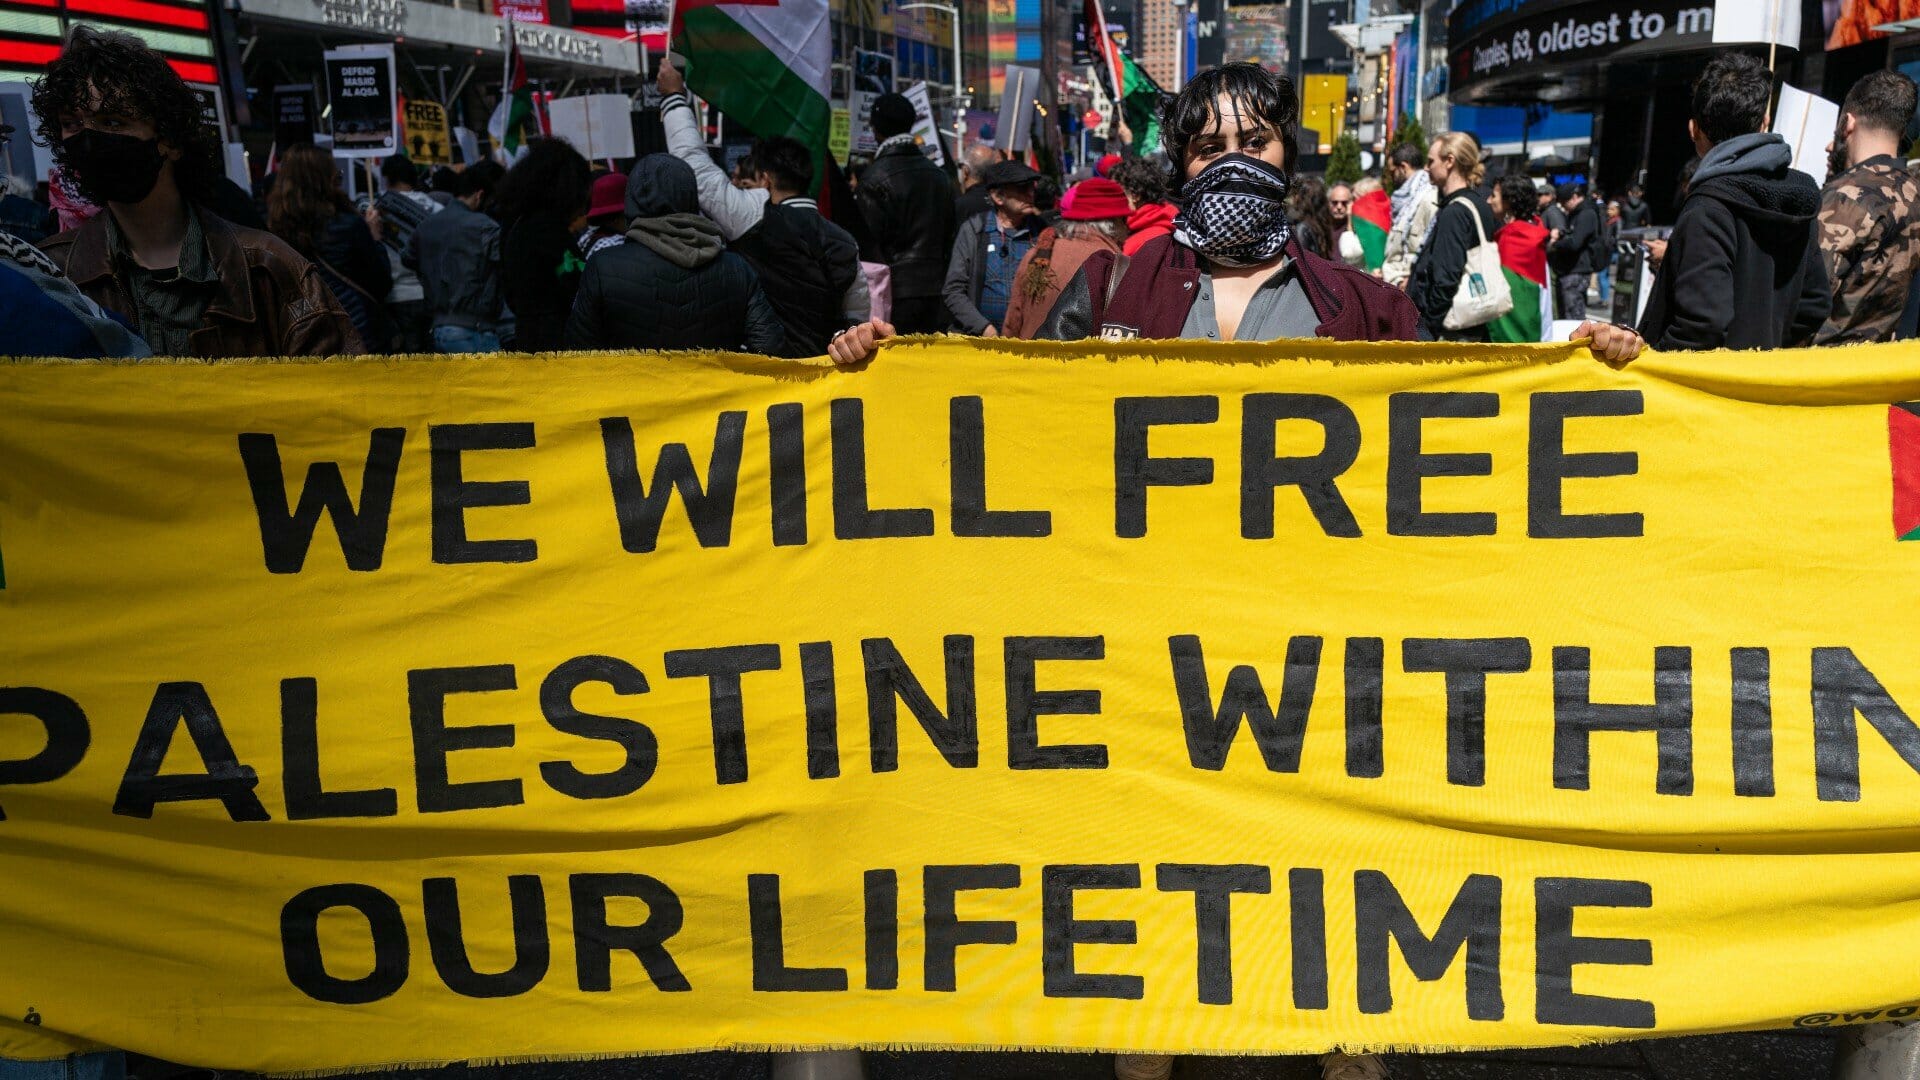 أنصار فلسطين يتظاهرون في تايمز سكوير احتجاجًا على الأحداث الأخيرة بين إسرائيل والفلسطينيين والتي أدت إلى سقوط قتلى في كلا المجتمعين في 8 أبريل 2023 في مدينة نيويورك